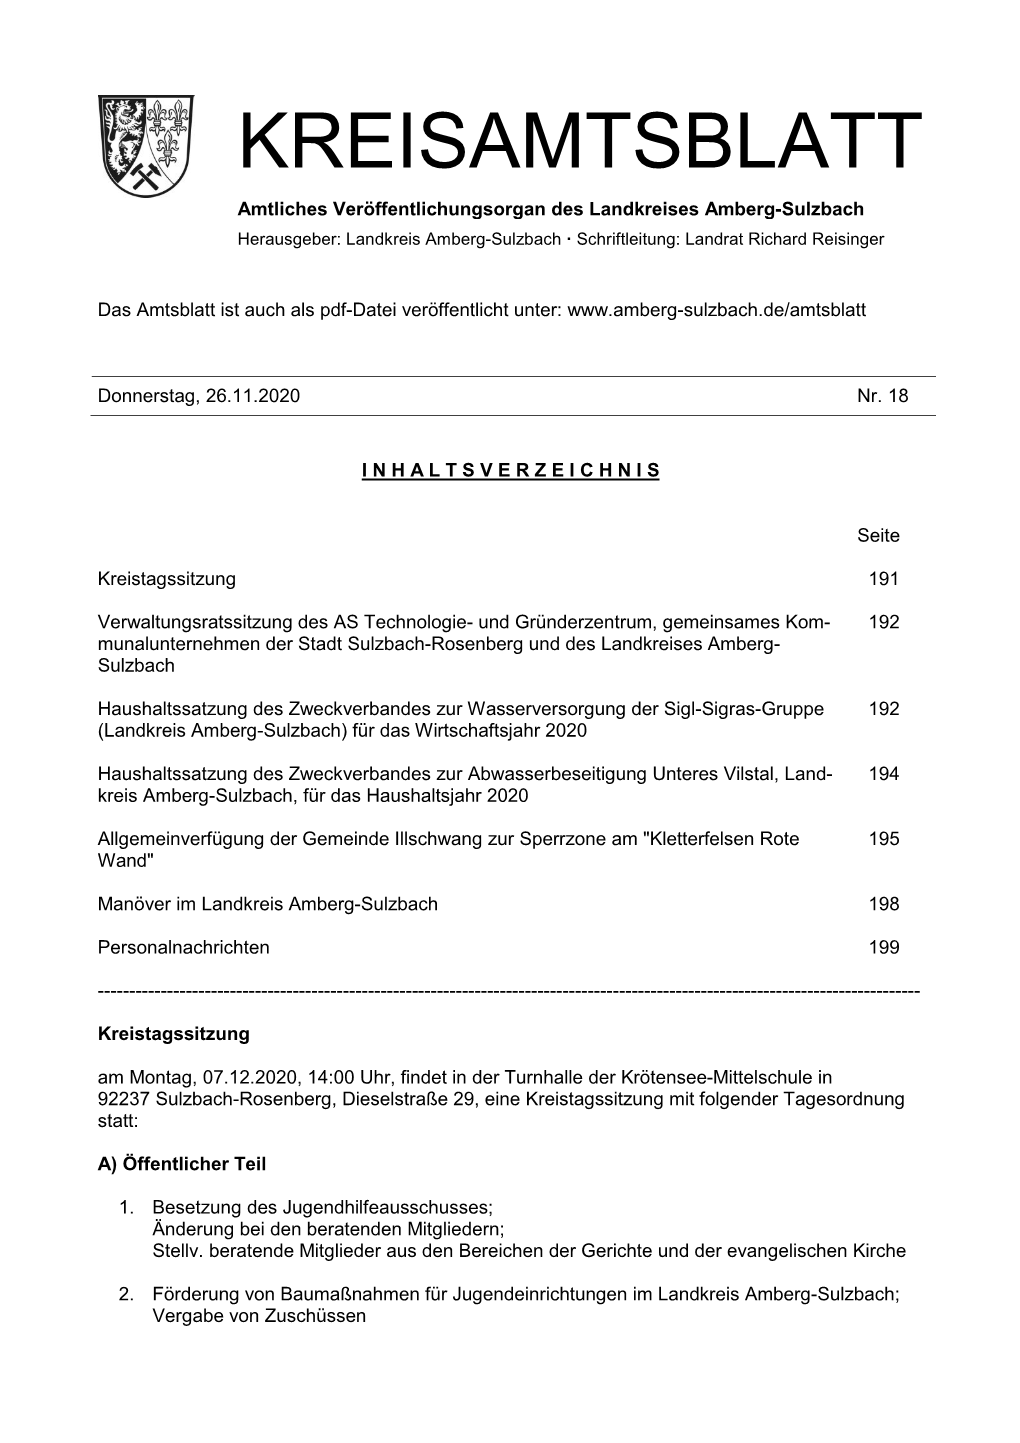 Kreisamtsblatt 18/2020 PDF, 124 Kb